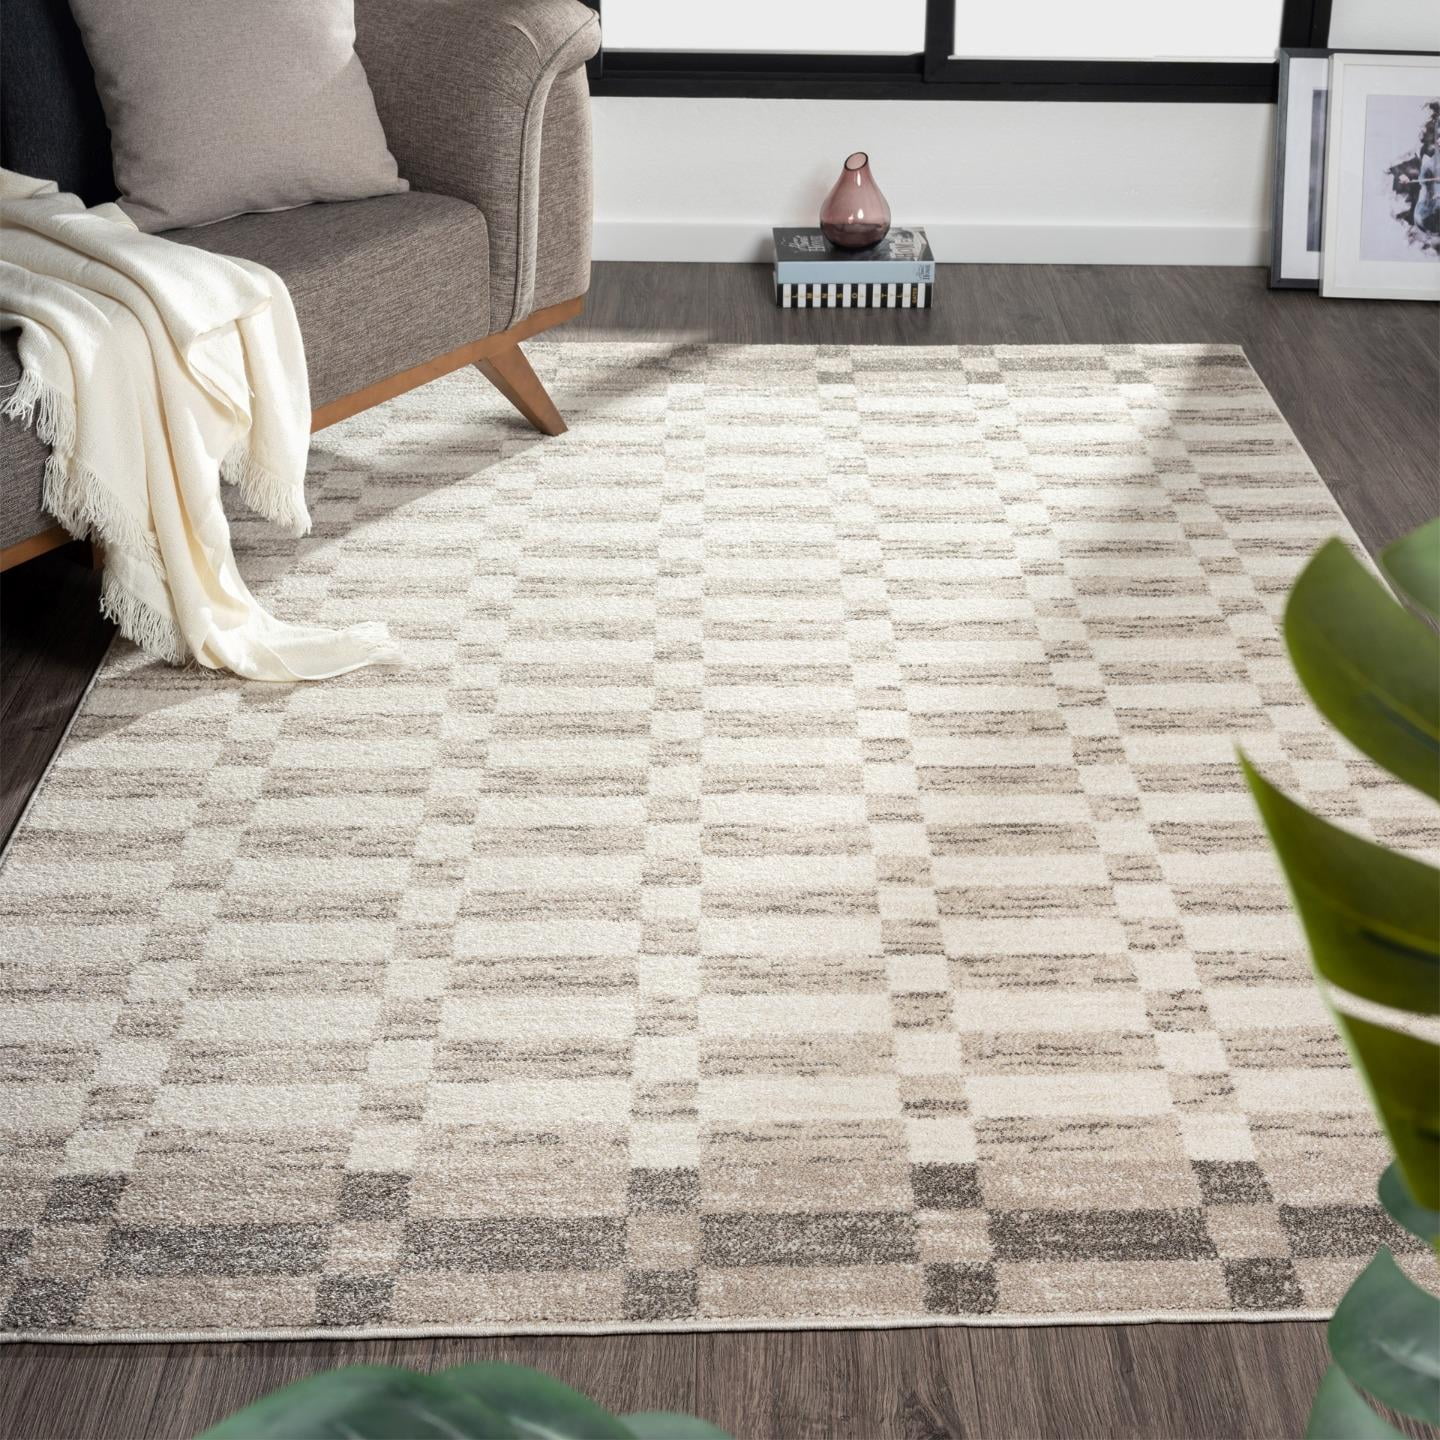 Stitch 3d Carpet Area Rug - Home Decor - Bedroom Living Room Décor 31FCE5